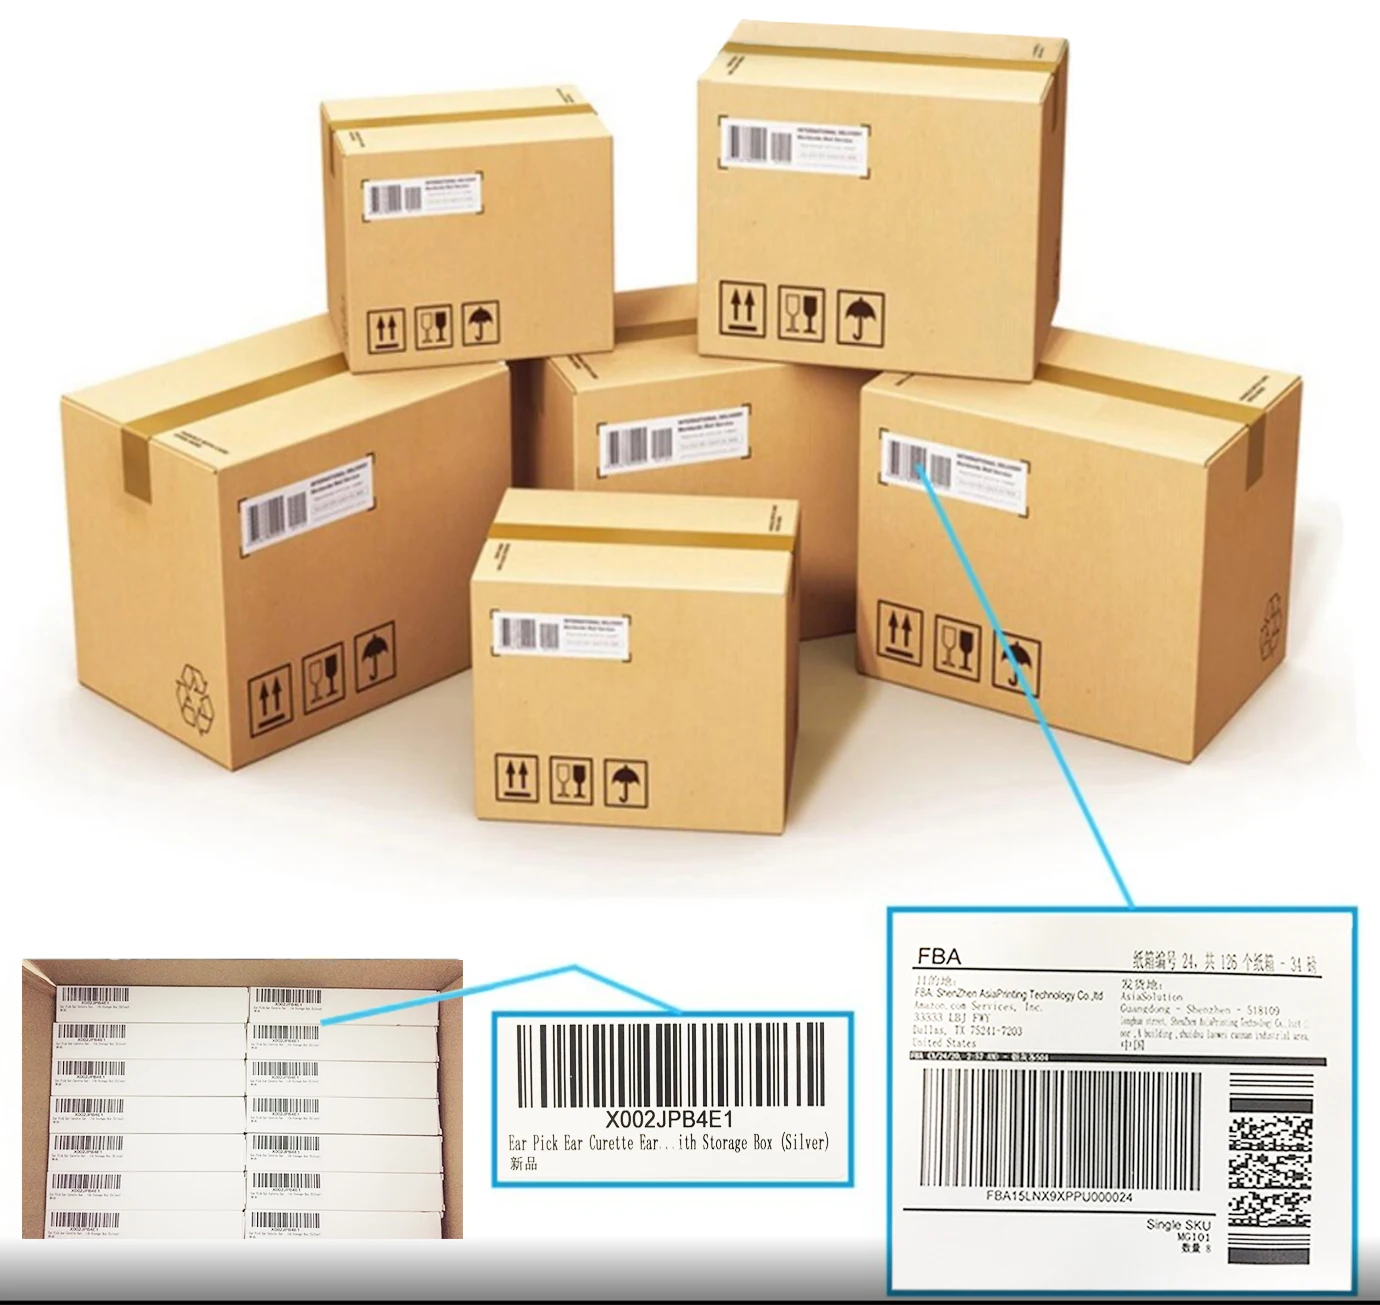 Упаковка товара на вб. Коробки с товаром. Коробки для упаковки товара. Маркировка упаковки. Упаковка и маркировка товара на складе.